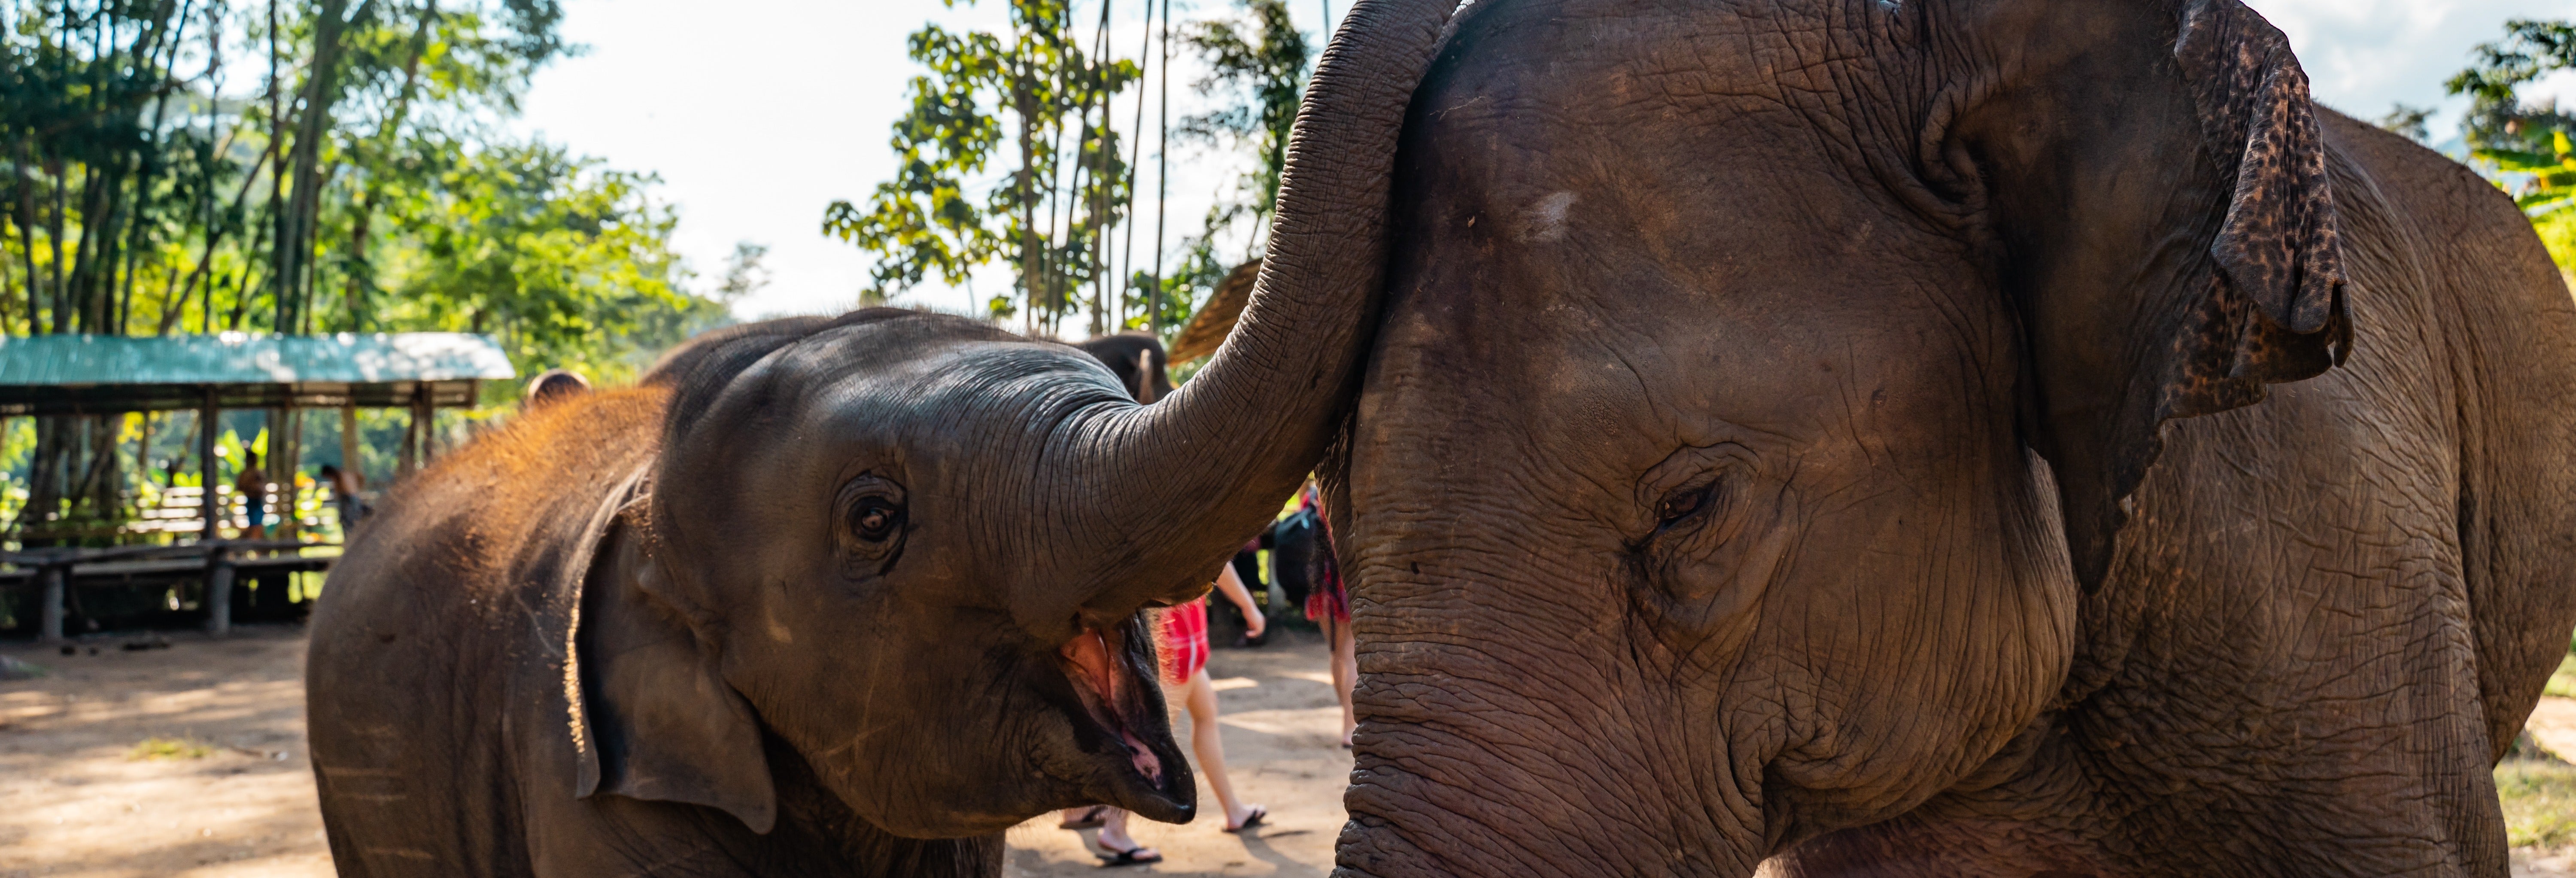 Excursão privada ao santuário de elefantes + Rafting